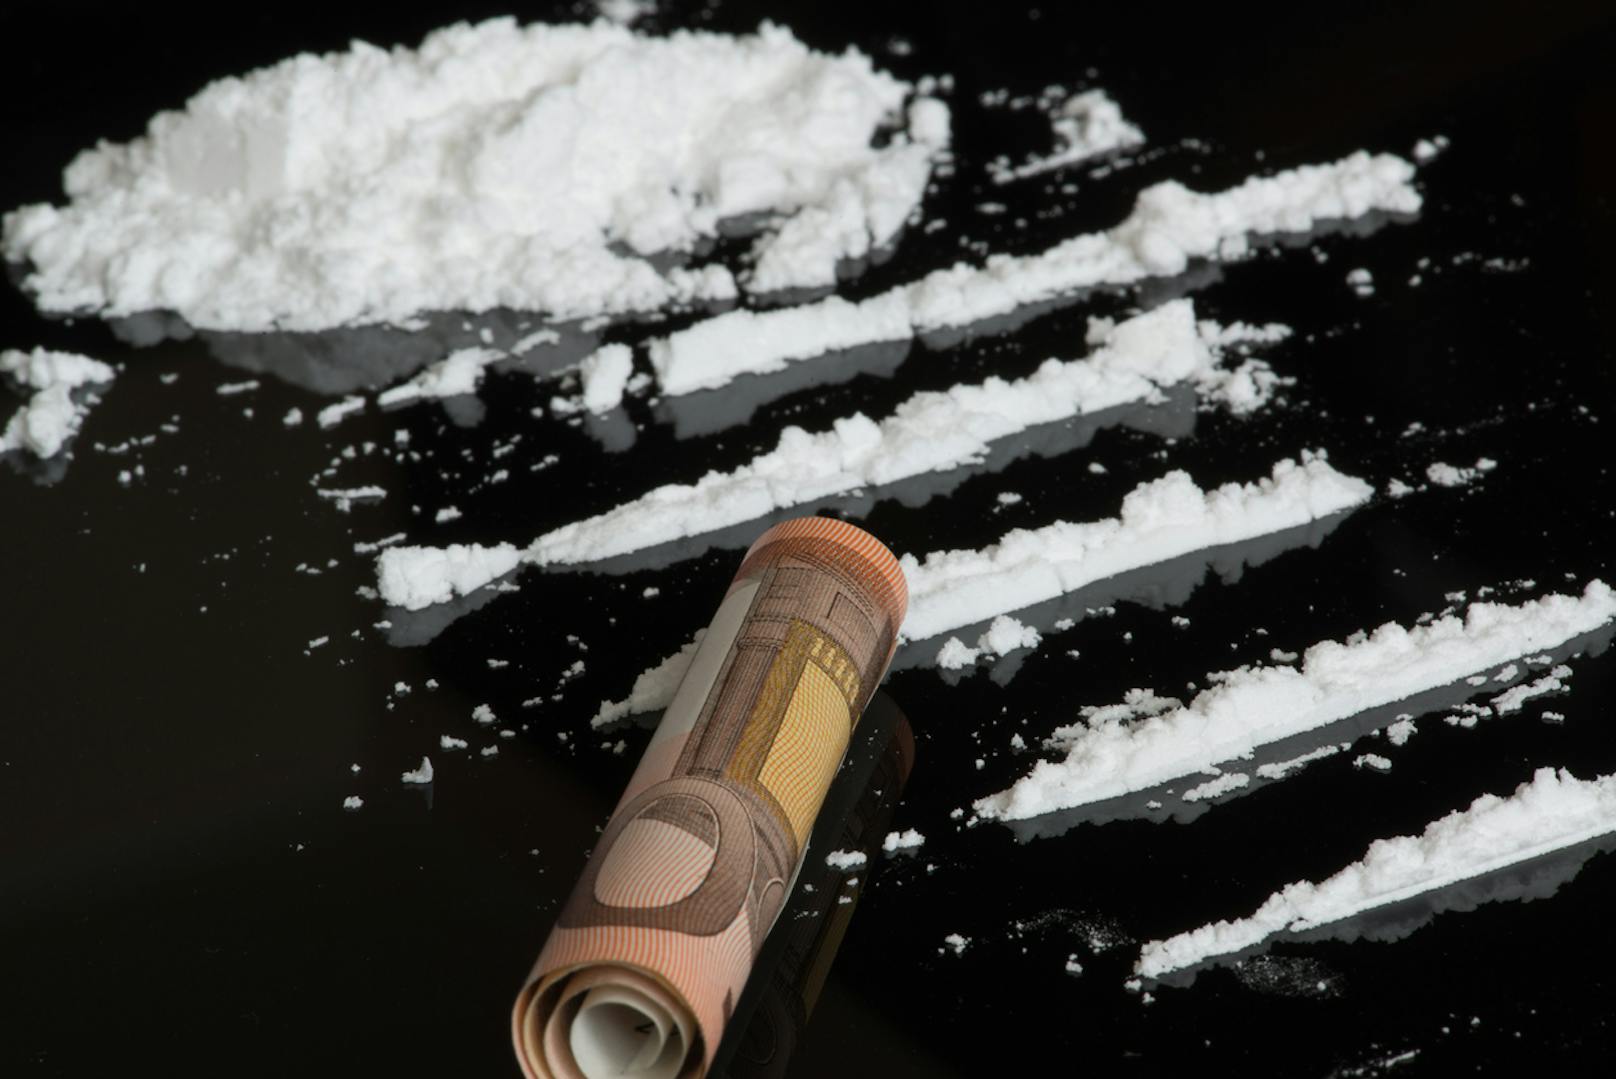 541 Kilogramm Kokain rissen sich die Einbrecher unter den Nagl.